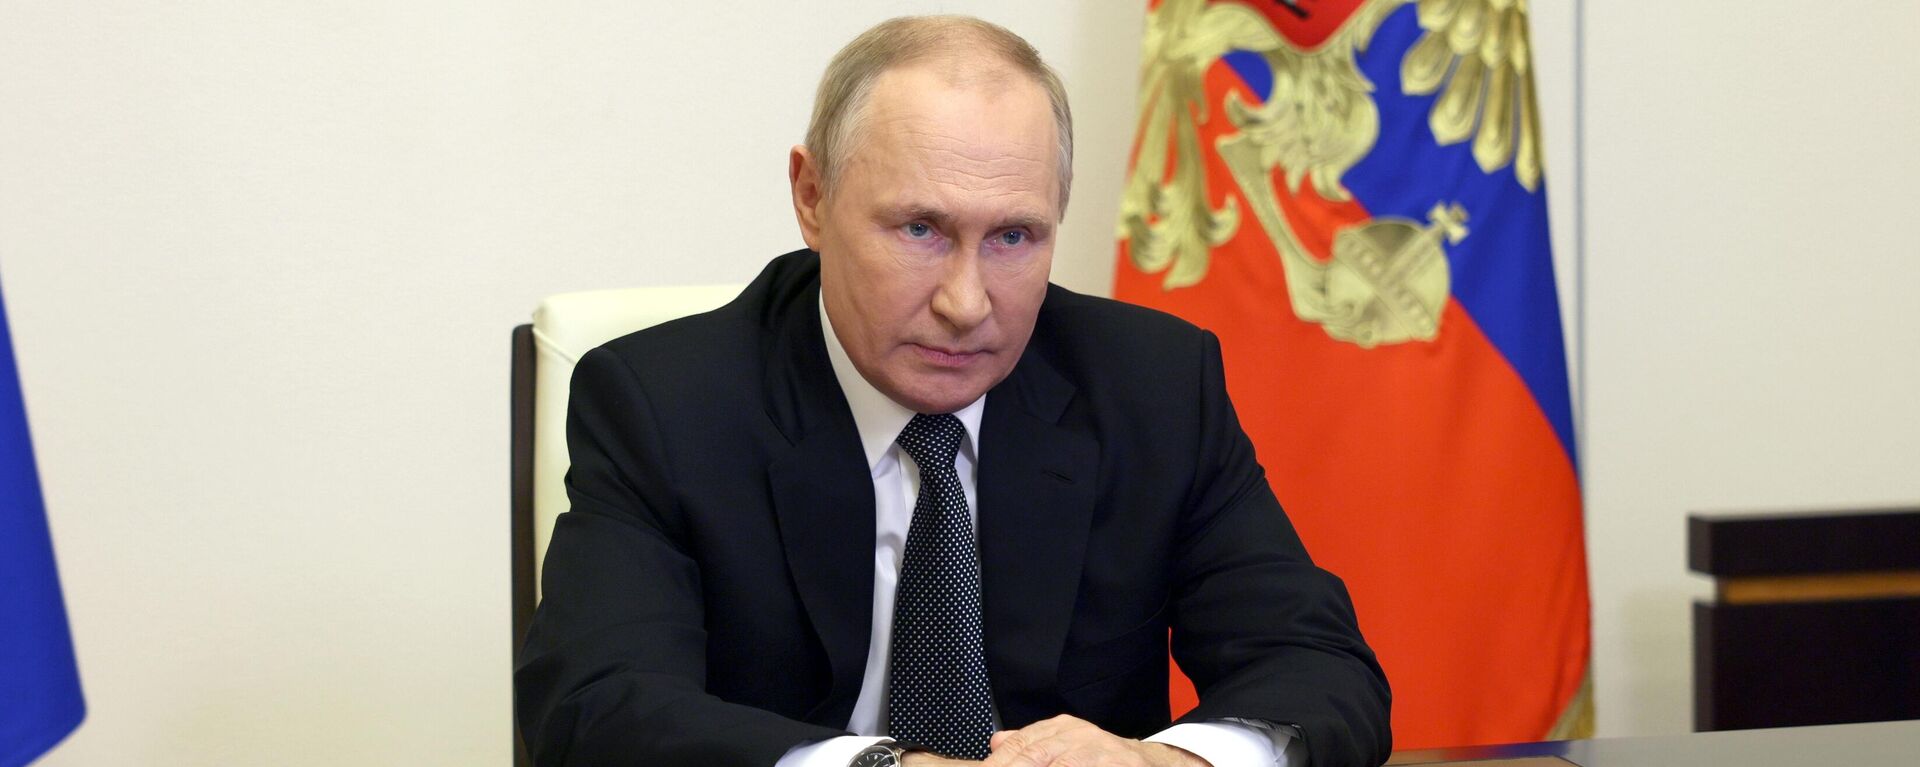 Rusiya Prezidenti Vladimir Putin - Sputnik Azərbaycan, 1920, 19.10.2022